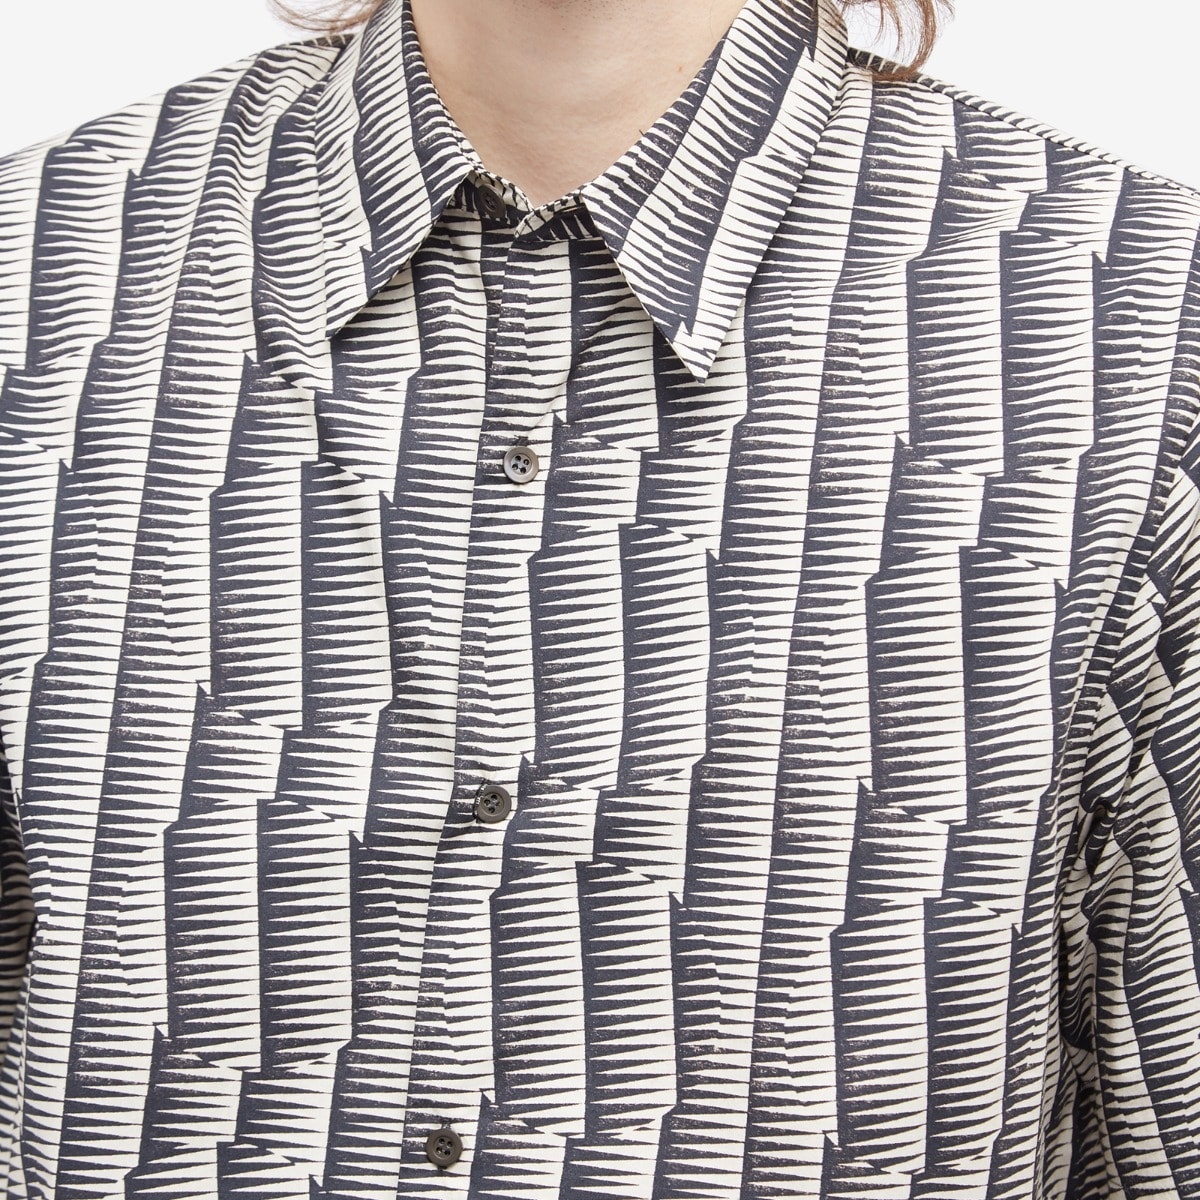 Dries Van Noten Clasen Geometric Print Short Sleeve Shirt - 5